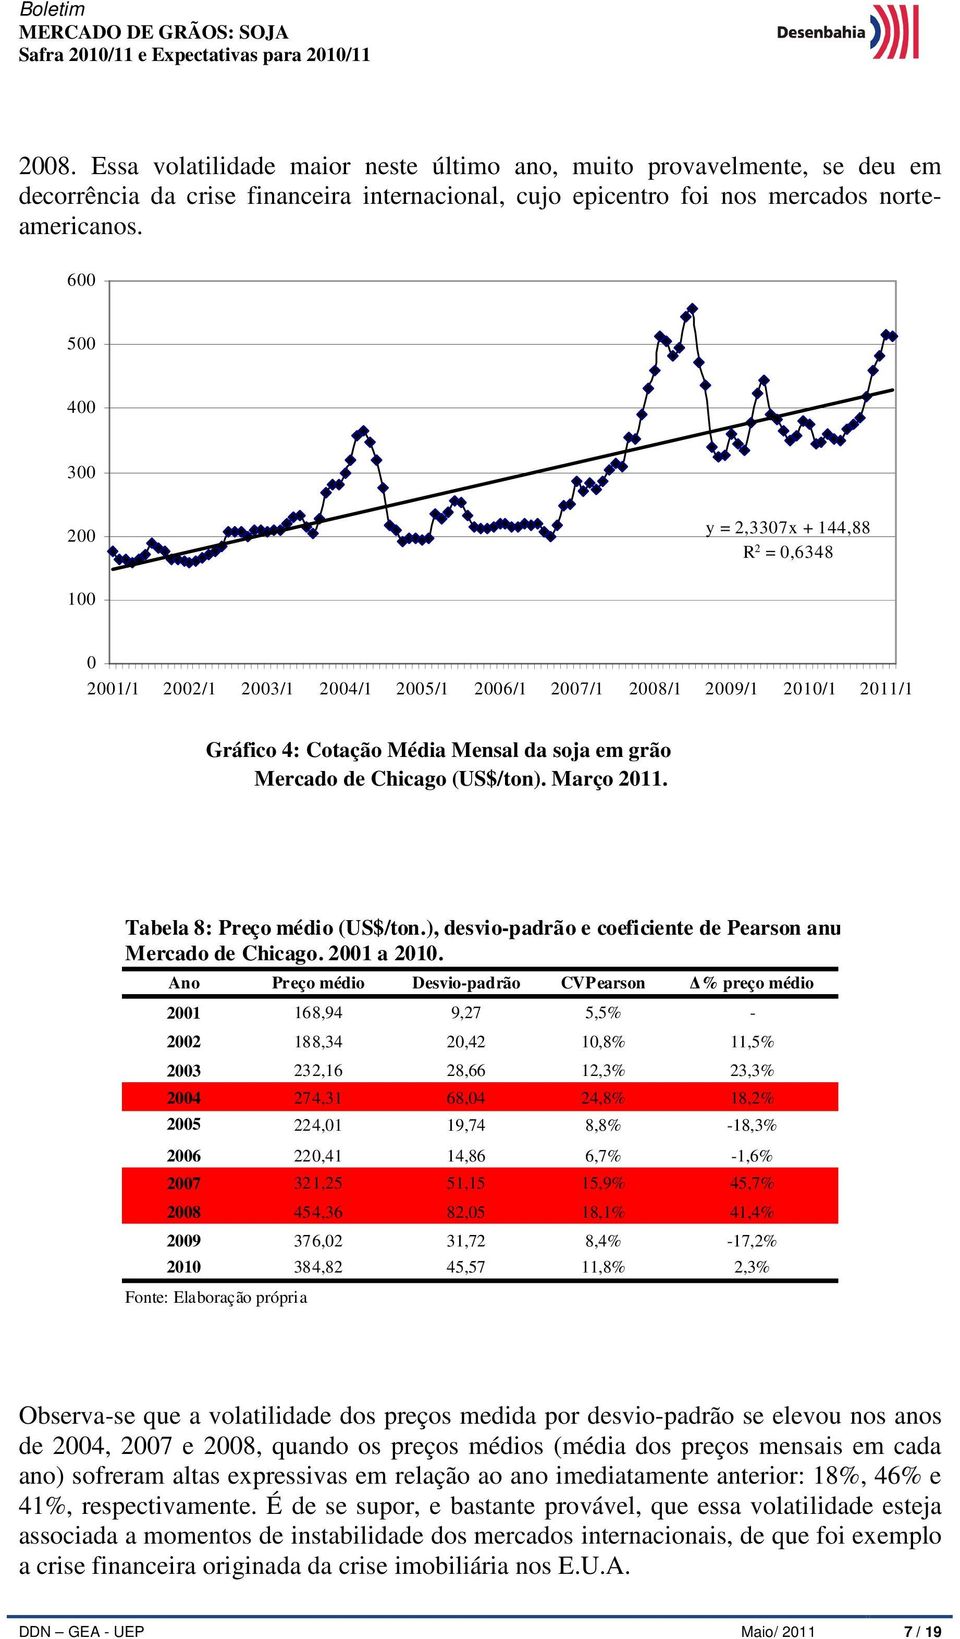 Chicago (US$/ton). Março 2011. Tabela 8: Preço médio (US$/ton.), desvio-padrão e coeficiente de Pearson anuais. Mercado de Chicago. 2001 a 2010.